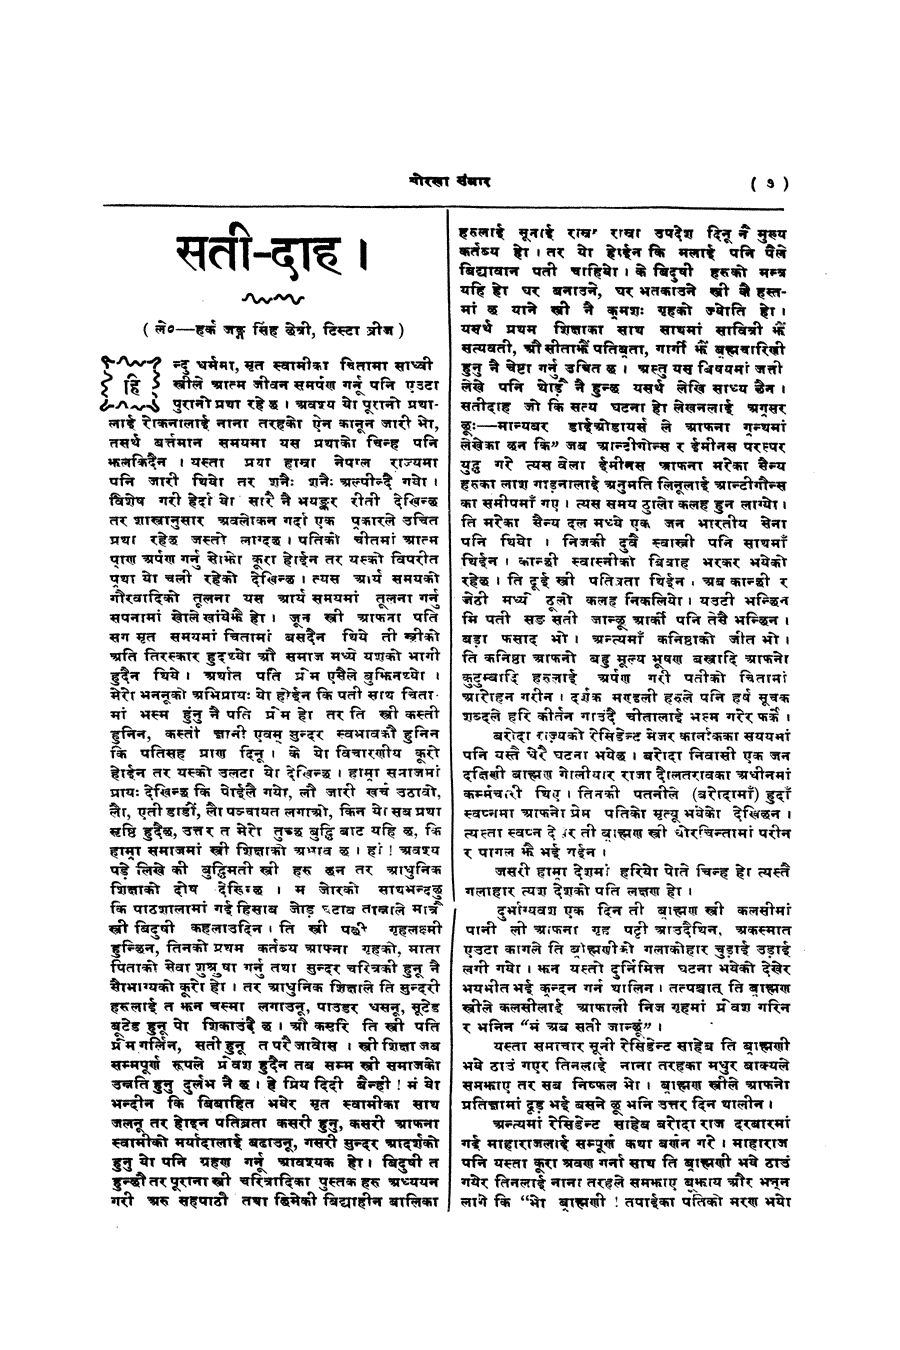 Gorkha Sansar, 3 Jan 1928, page 7